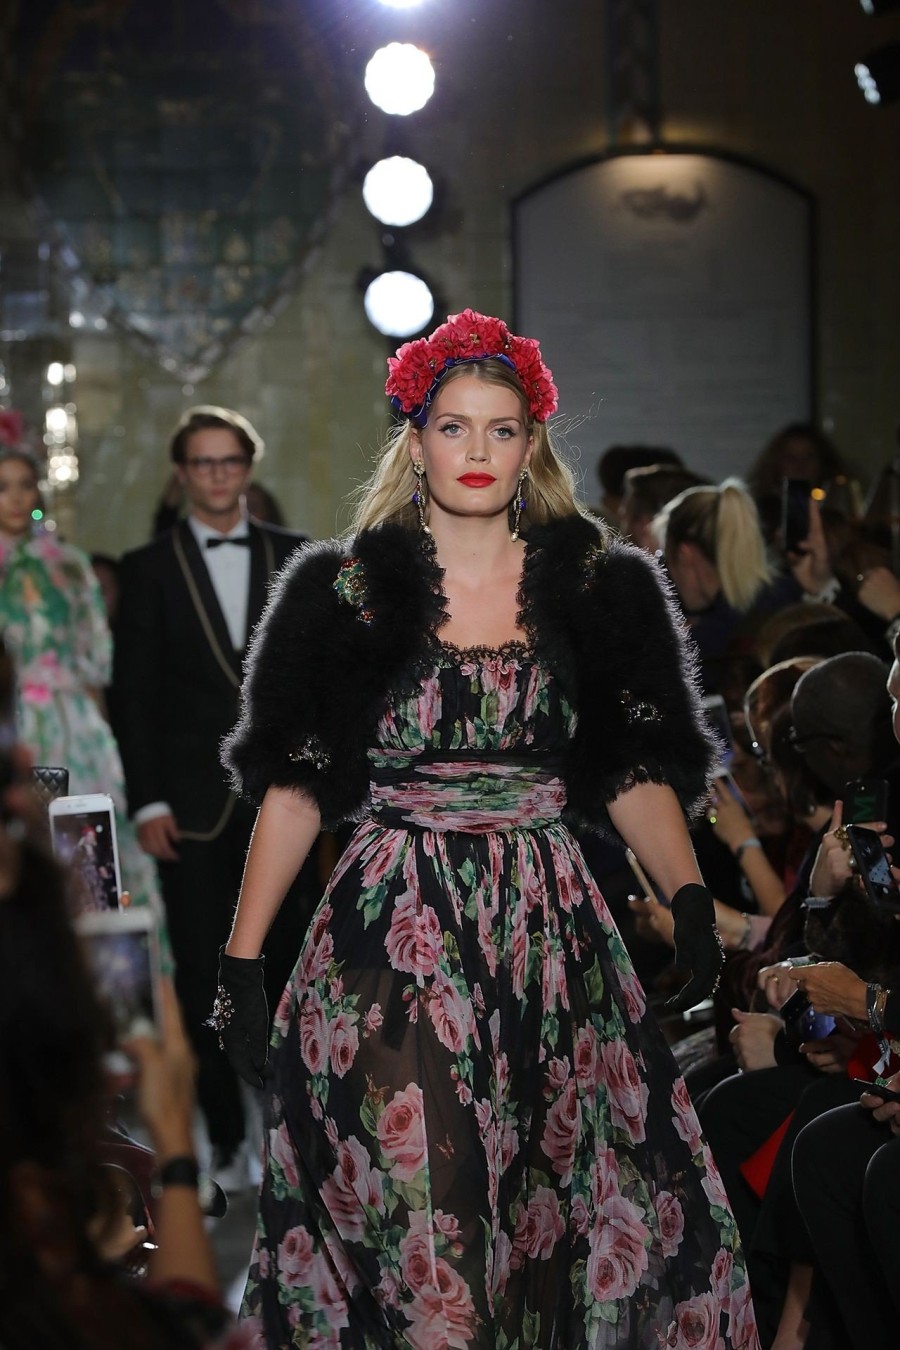 Οι Dolce & Gabbana μεταμορφώνουν τα Harrods του Λονδίνου για μια βραδιά - Φωτογραφία 4